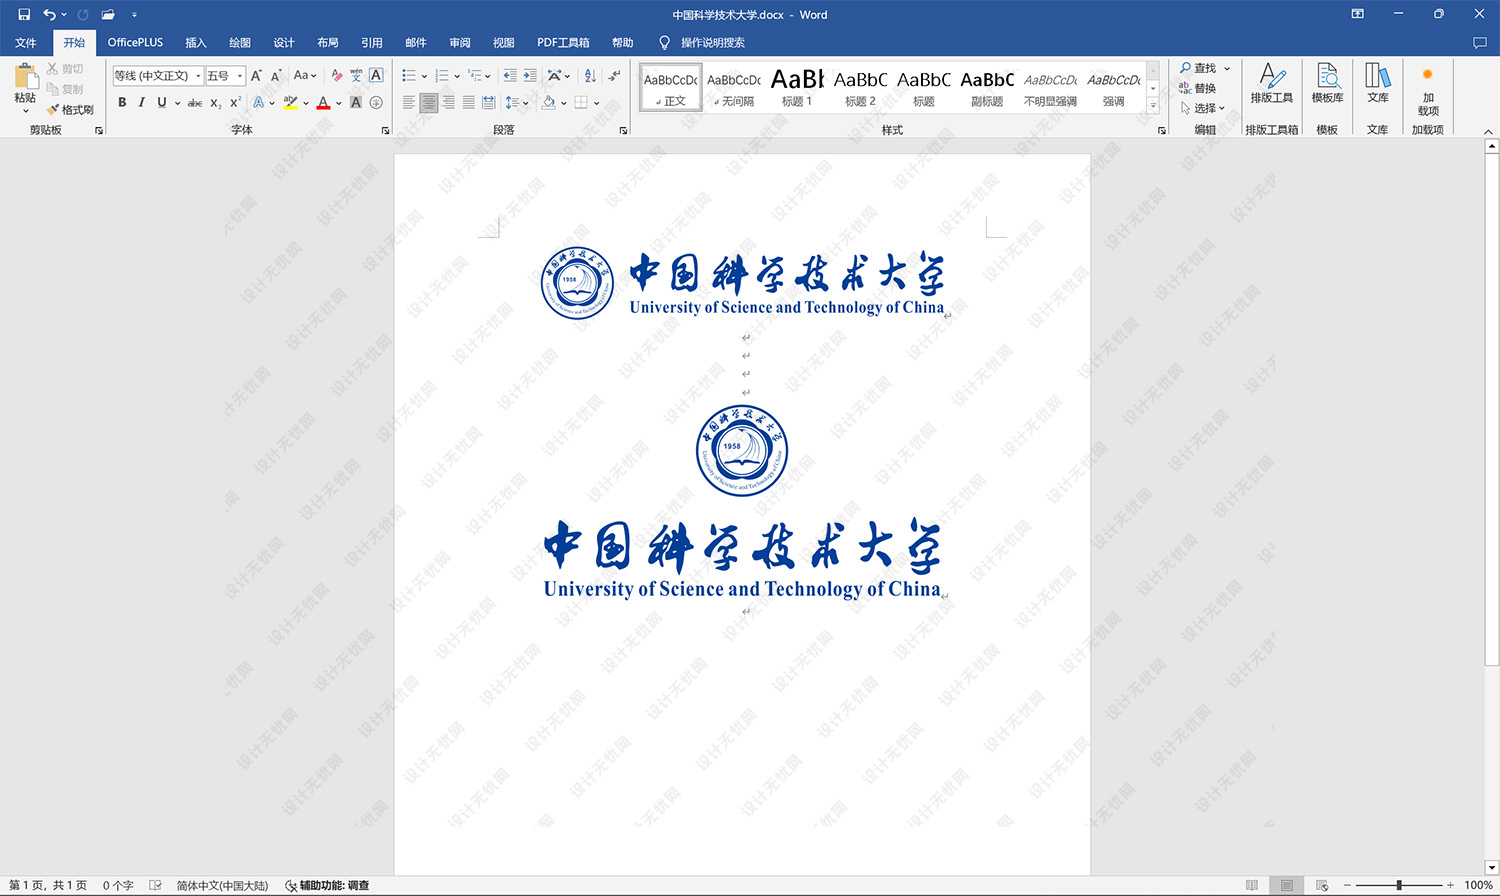 中国科学技术大学校徽logo矢量标志素材